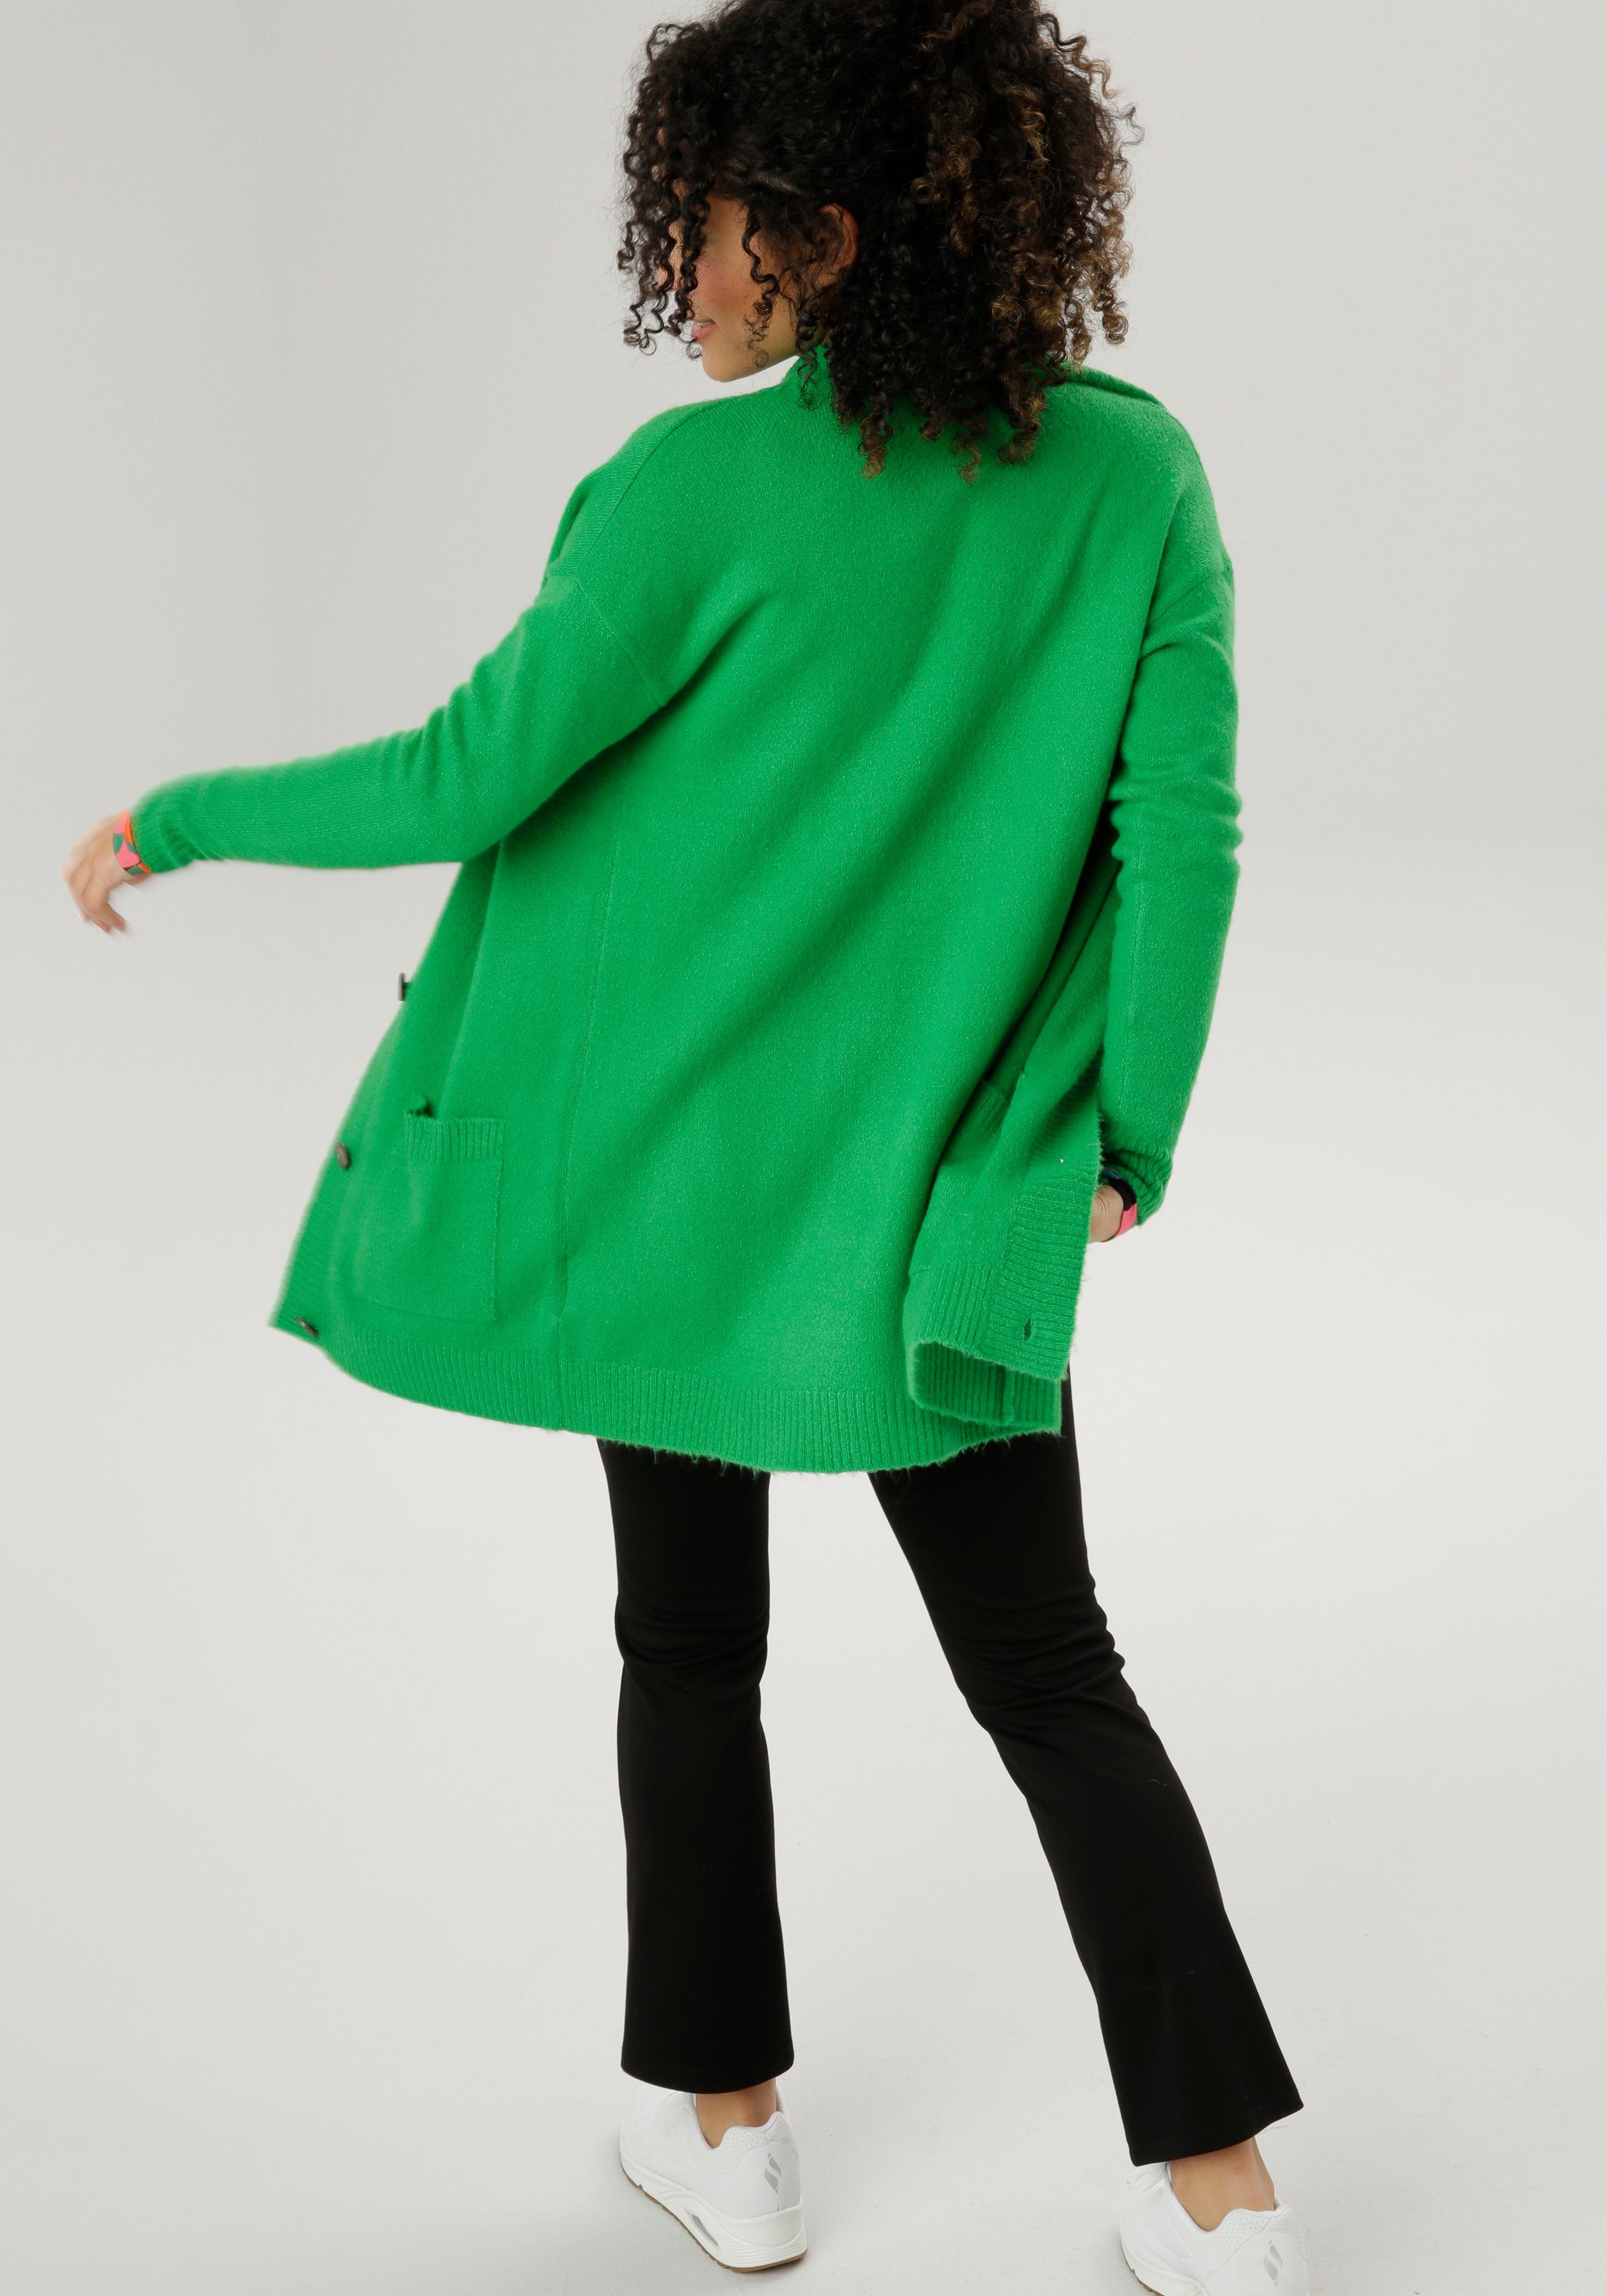 Aniston SELECTED Longstrickjacke mit aufgesetzen grün Taschen